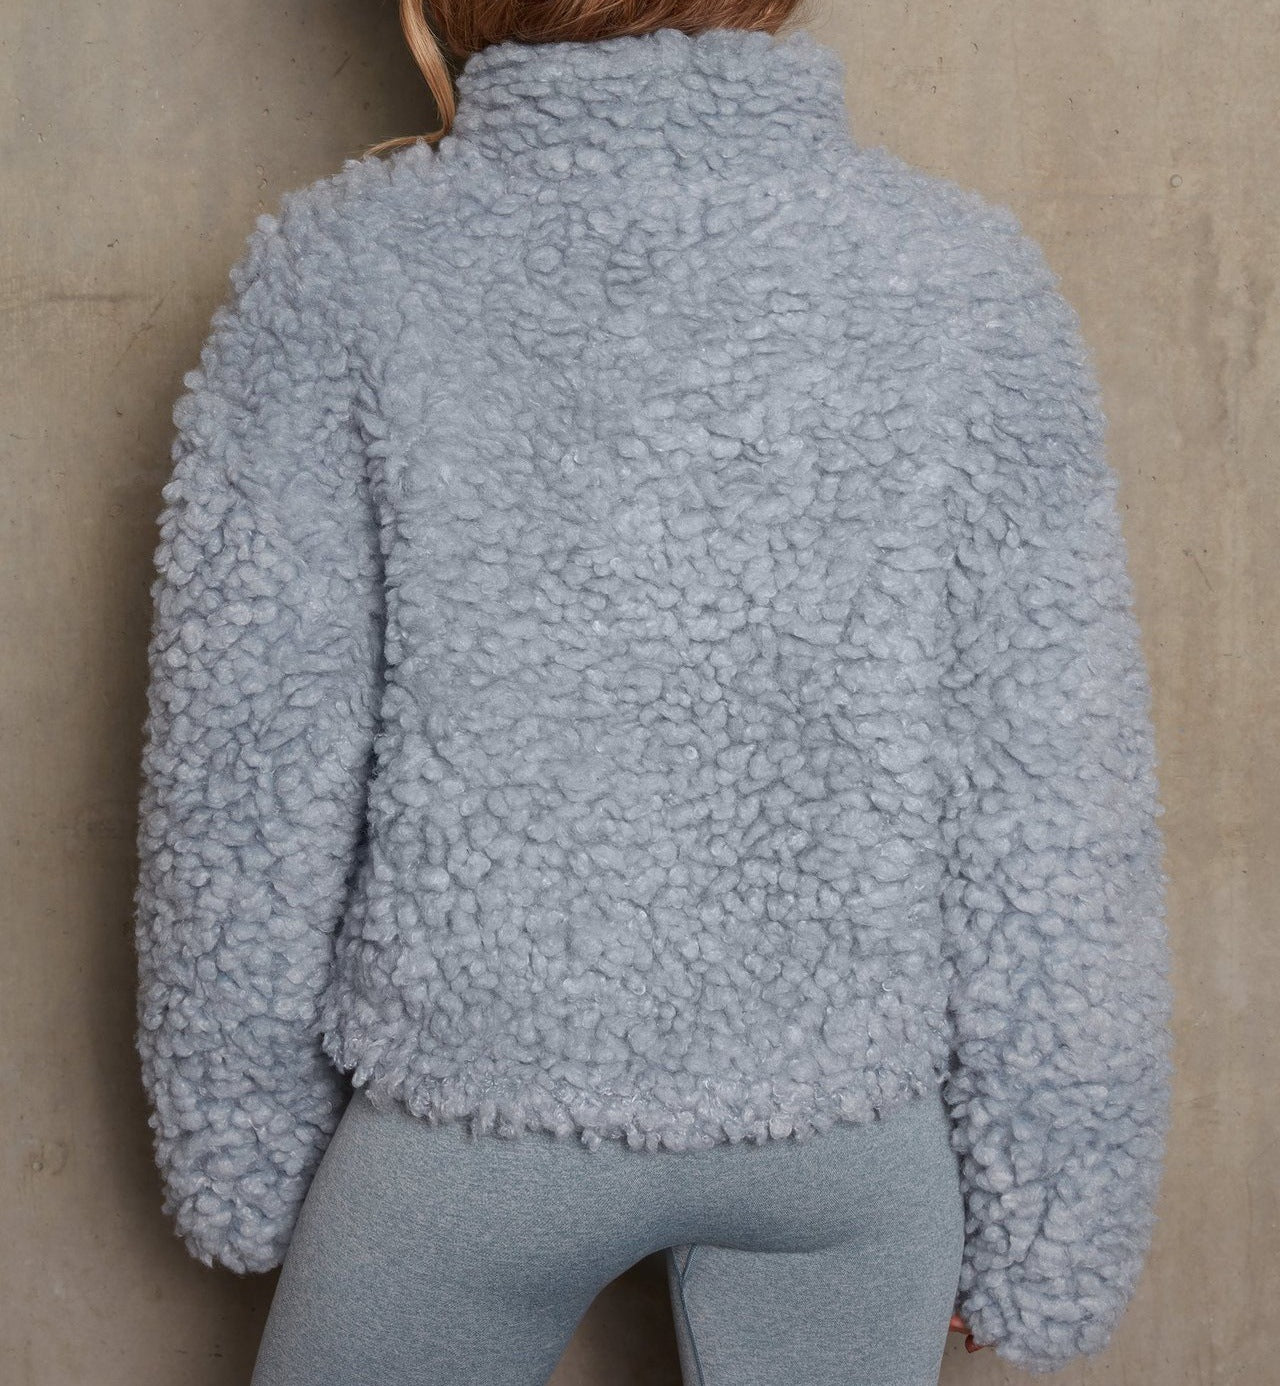 Women Faux Fur Winter Short Overcoat